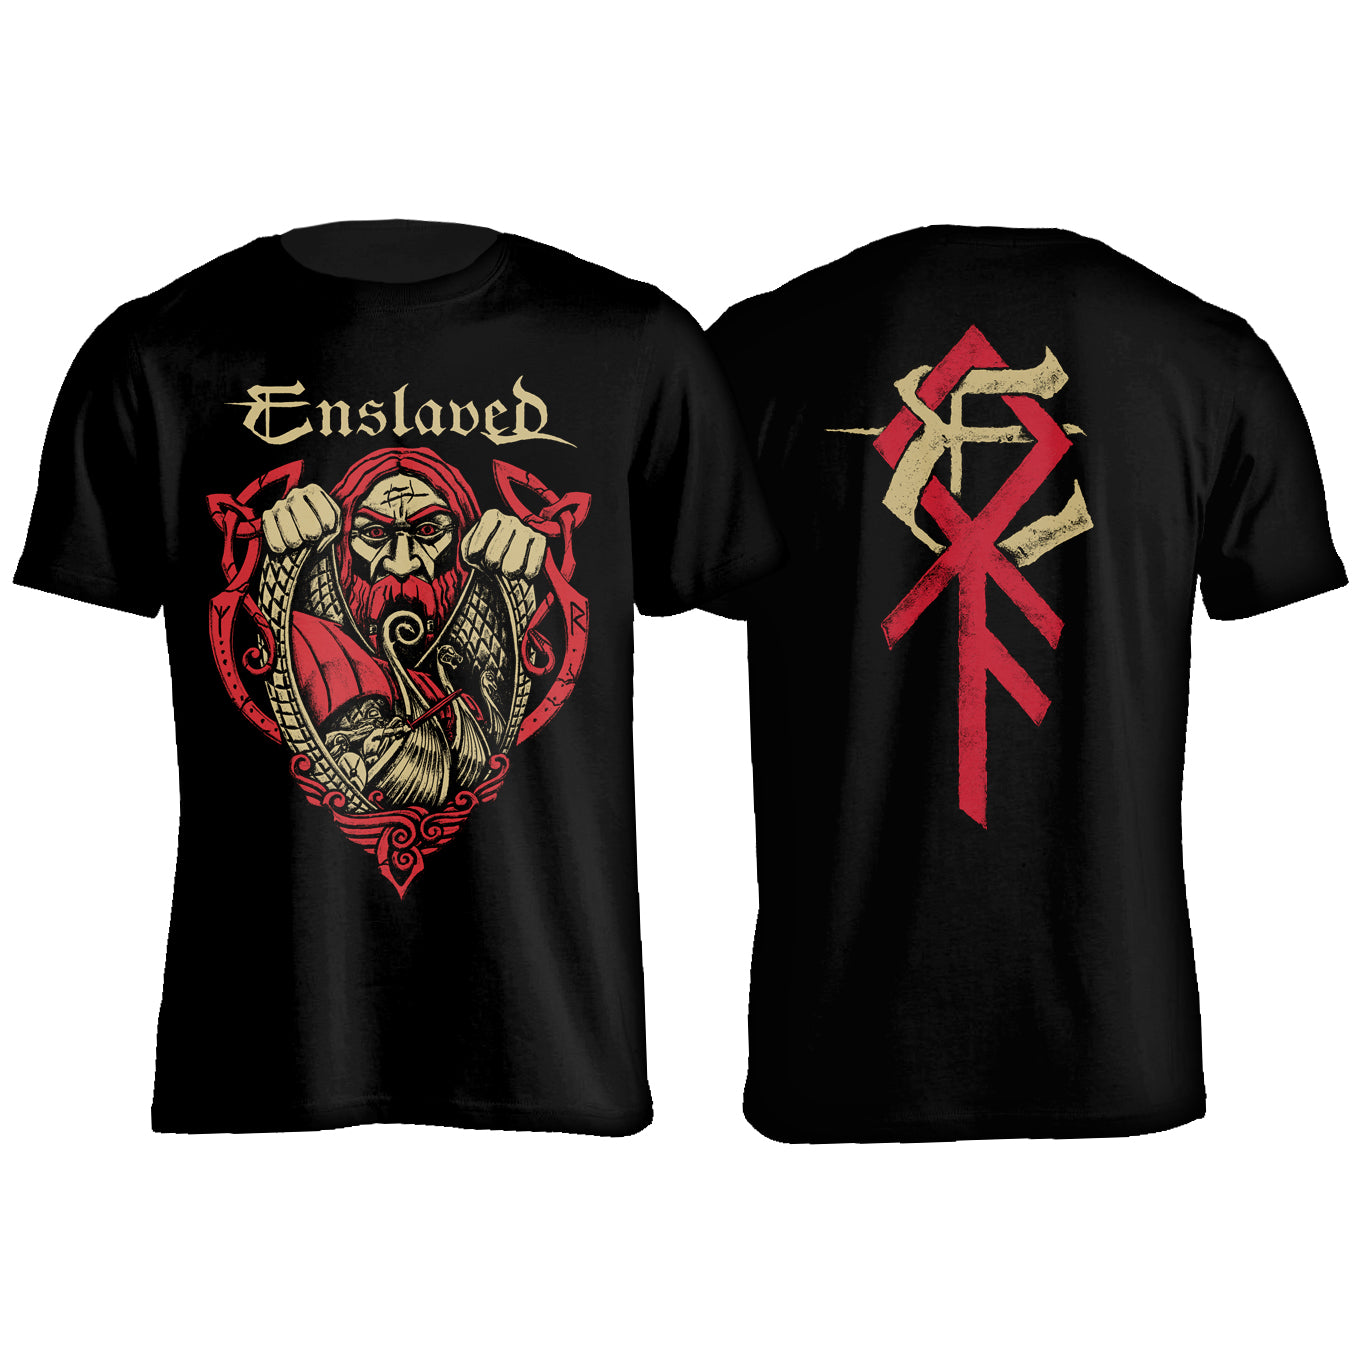 Enslaved - Viking T-Shirt